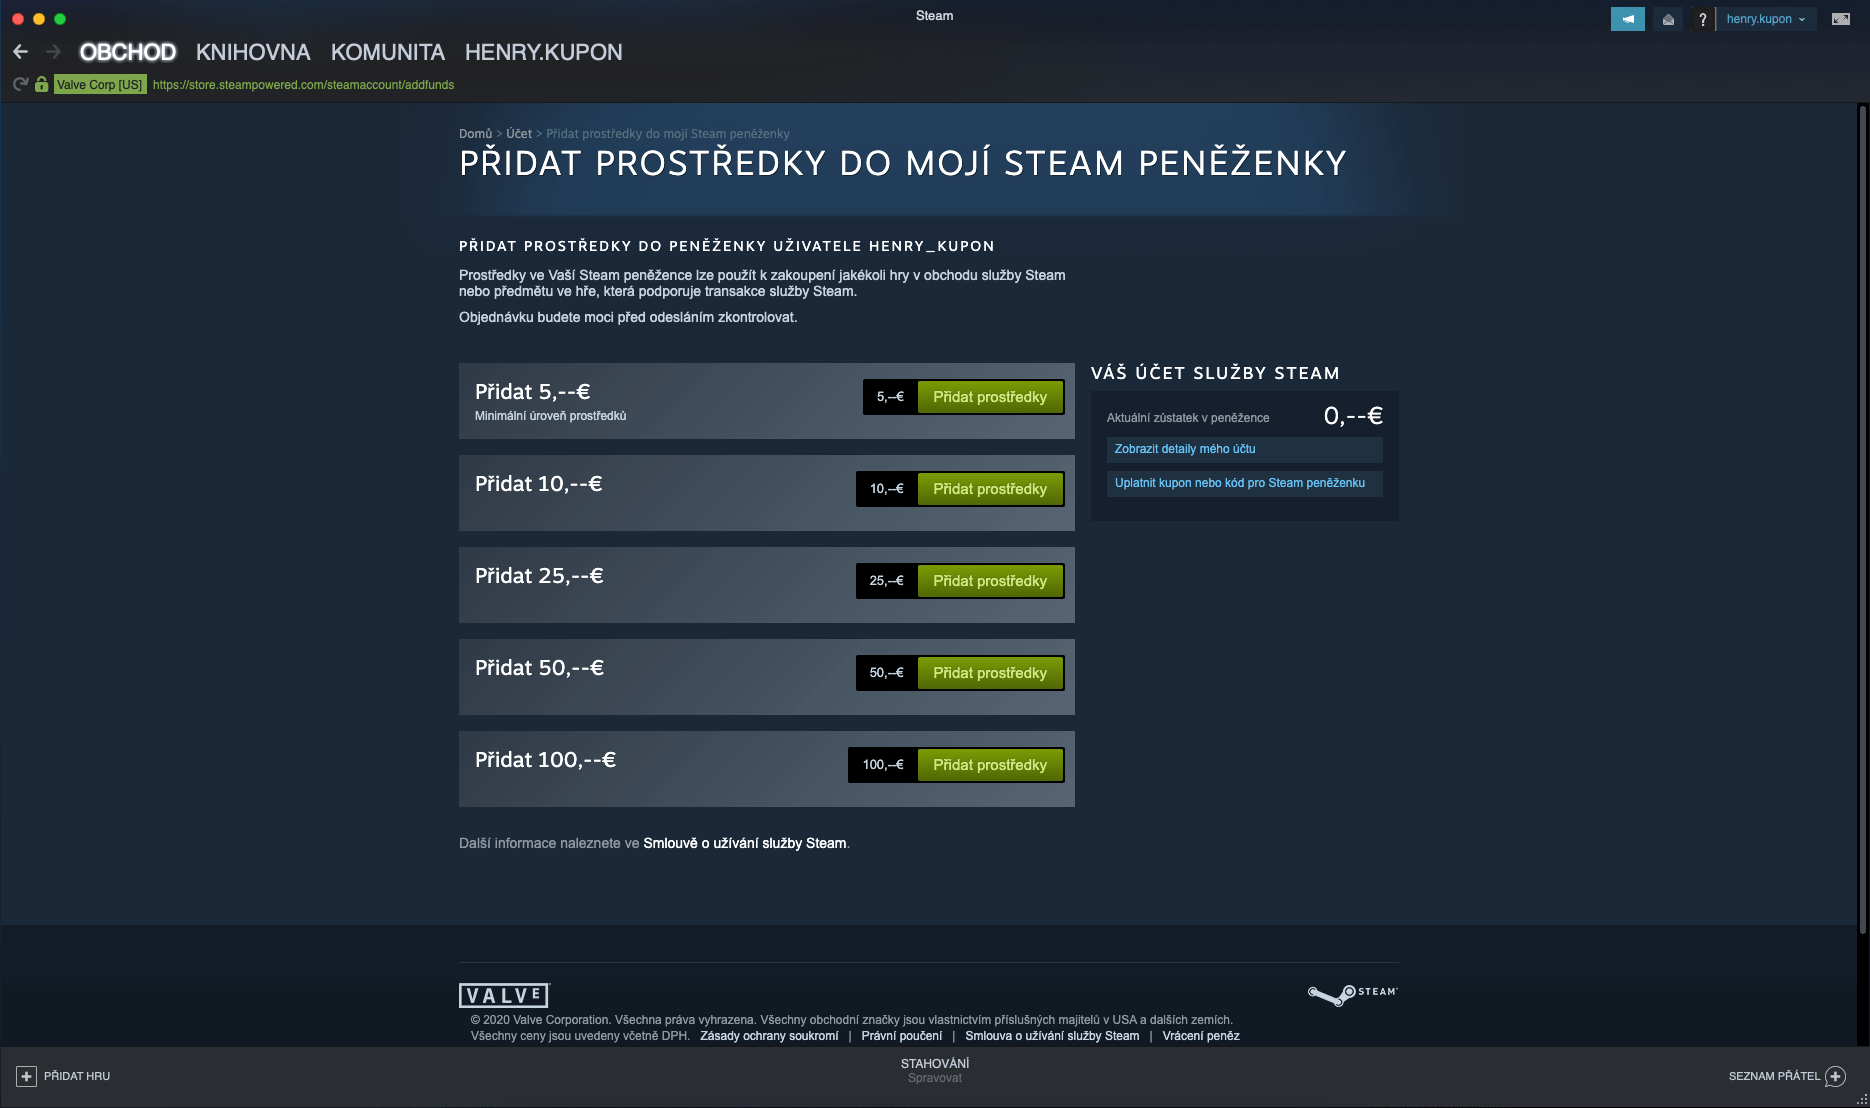 Jak se dá platit na Steamu?